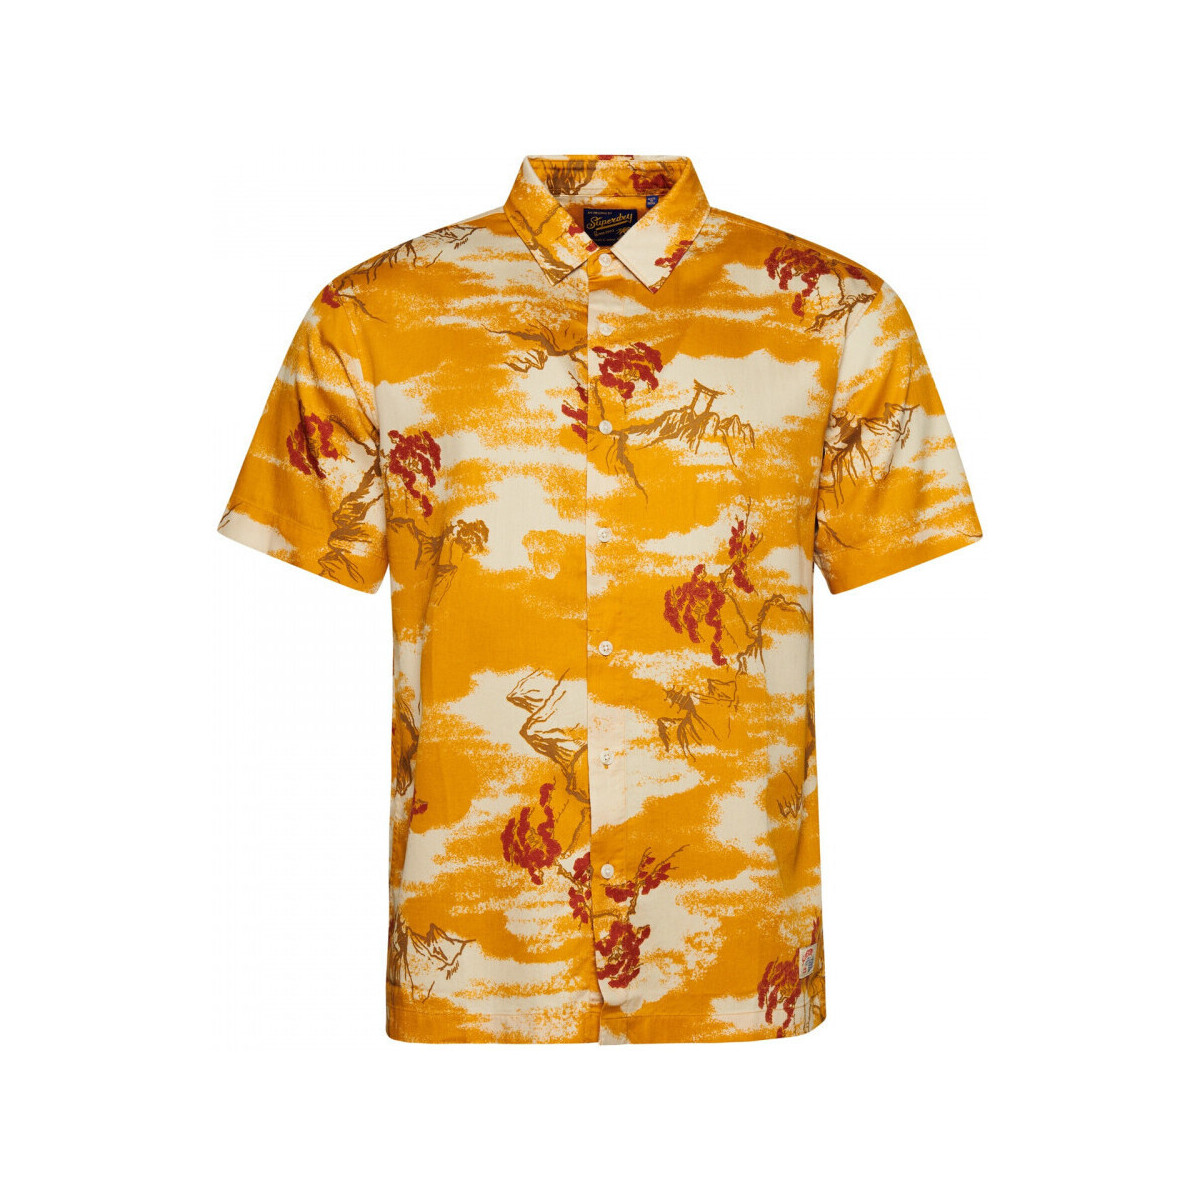 textil Herr Långärmade skjortor Superdry Vintage hawaiian s/s shirt Gul